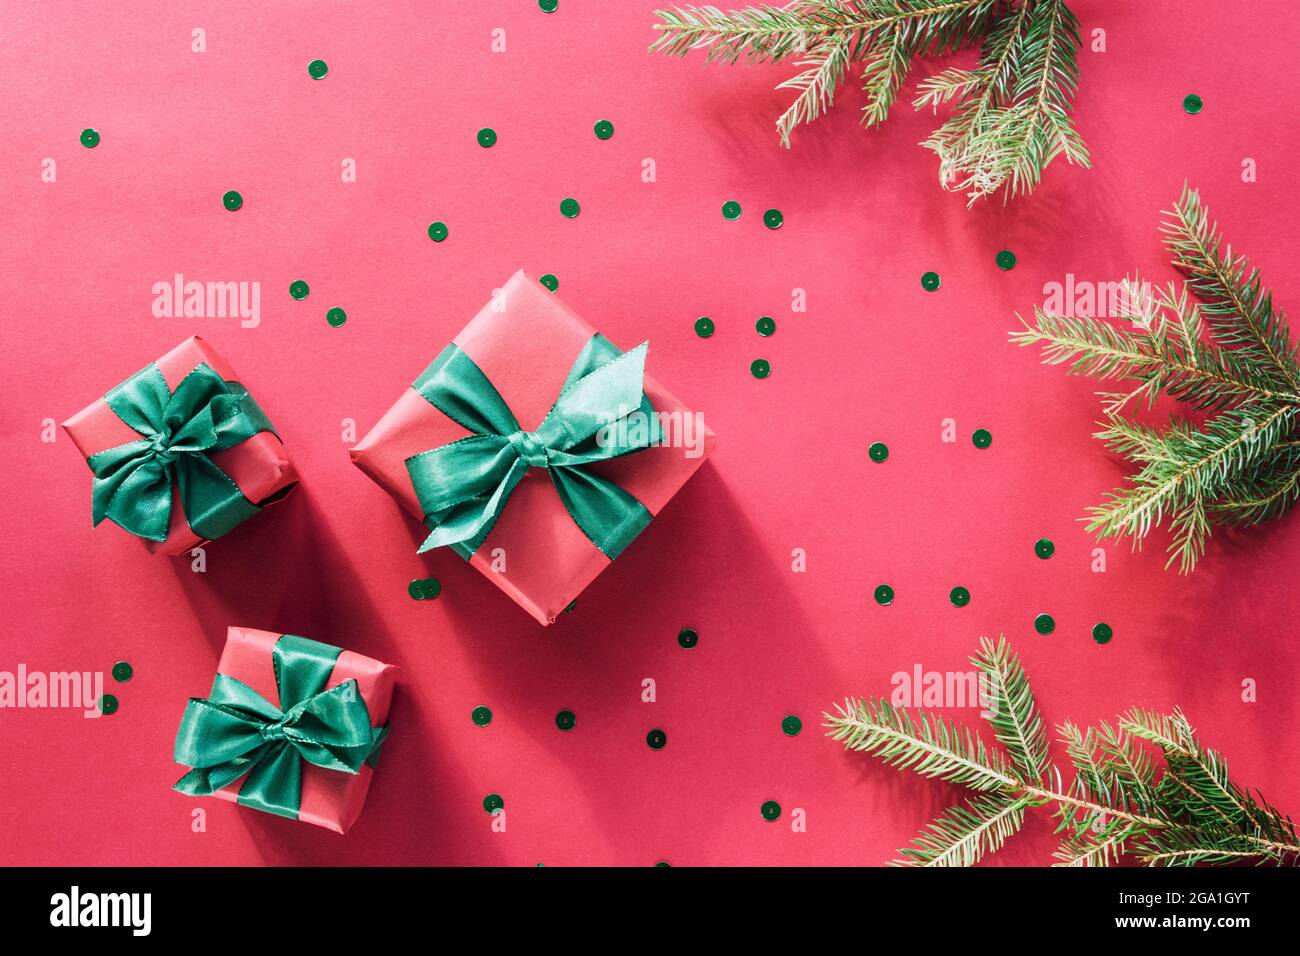 Natale e Capodanno di sfondo. Scatole regalo con archi verdi, rami di abete e confetti su sfondo rosso. Vista dall'alto, disposizione piatta. Foto Stock